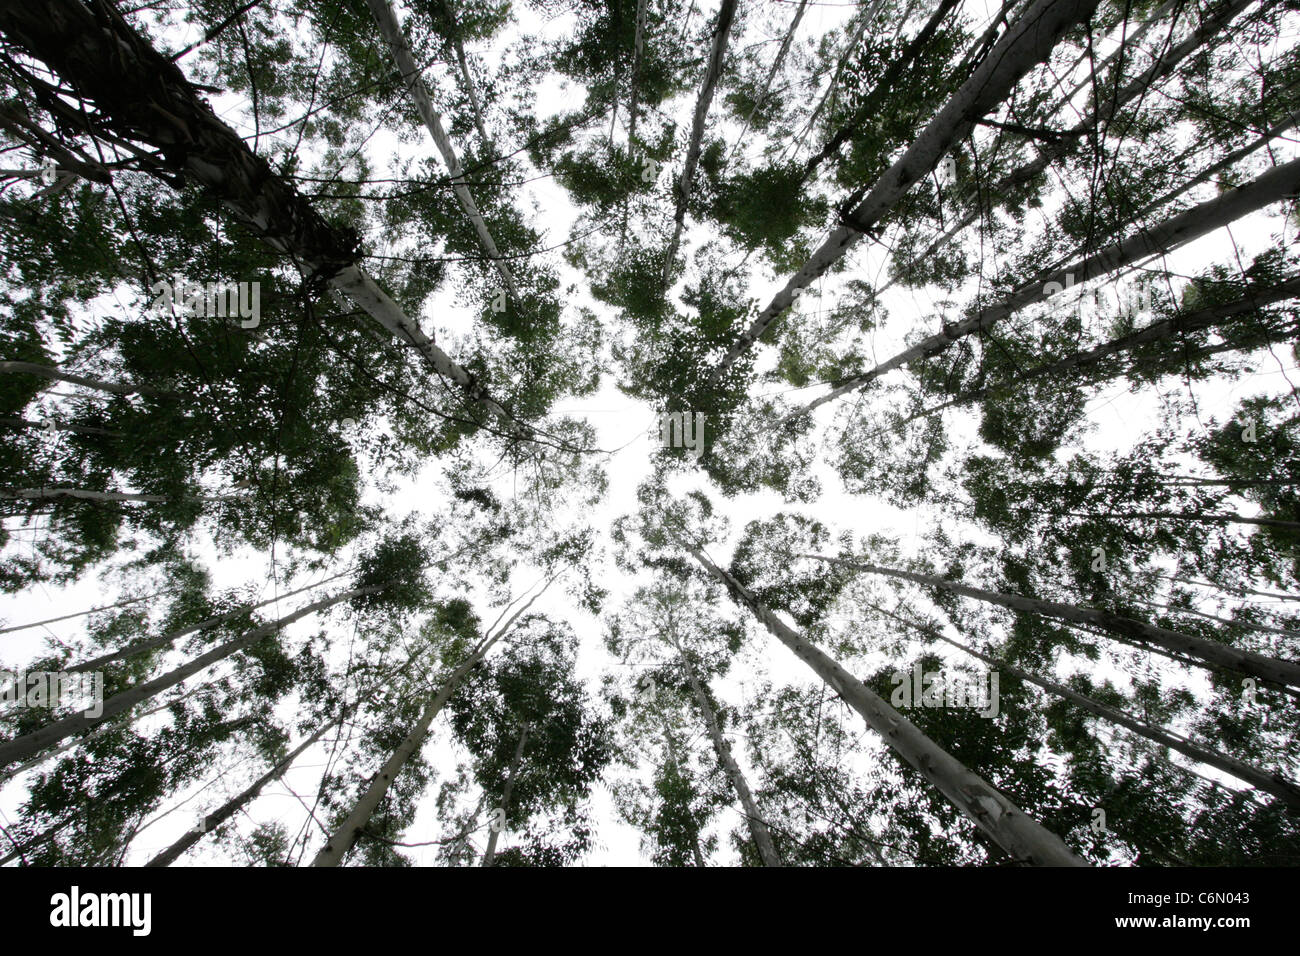 Altos eucaliptos vista desde abajo Foto de stock